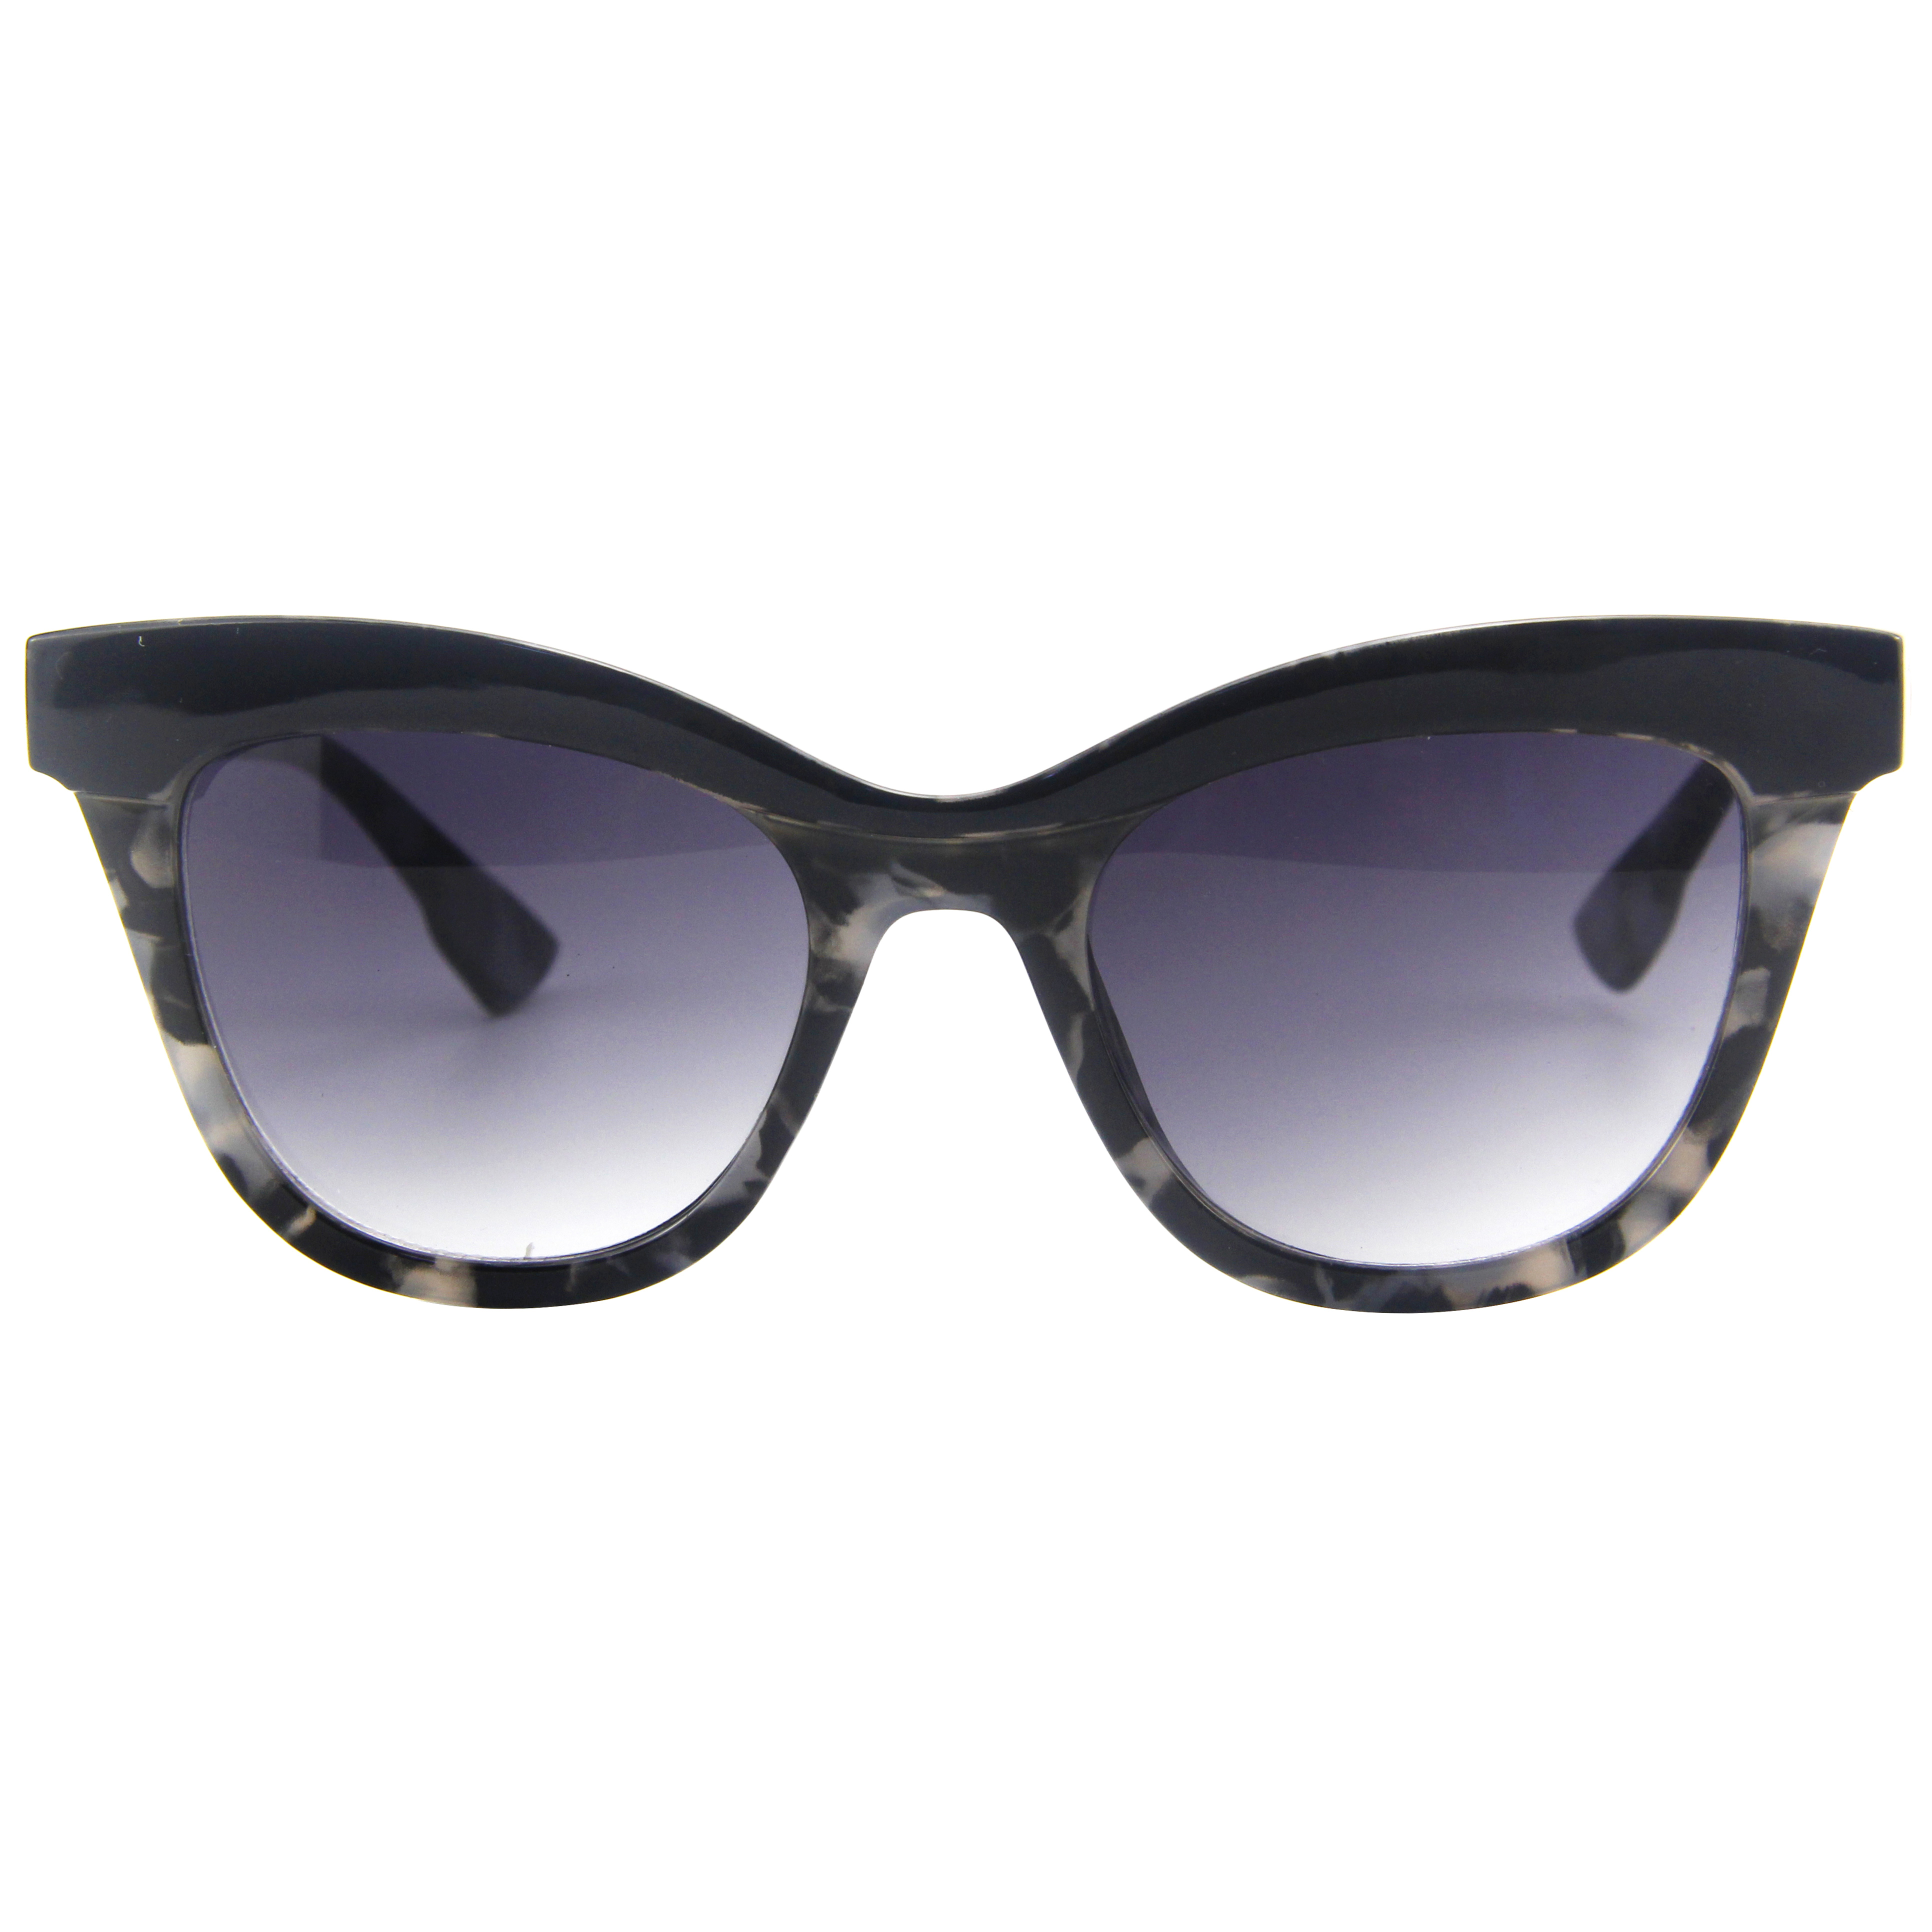 EUGENIA True Polish Colors Black Leopard Print Mirror Polarized Oculos De Sol Sunglasses For Women